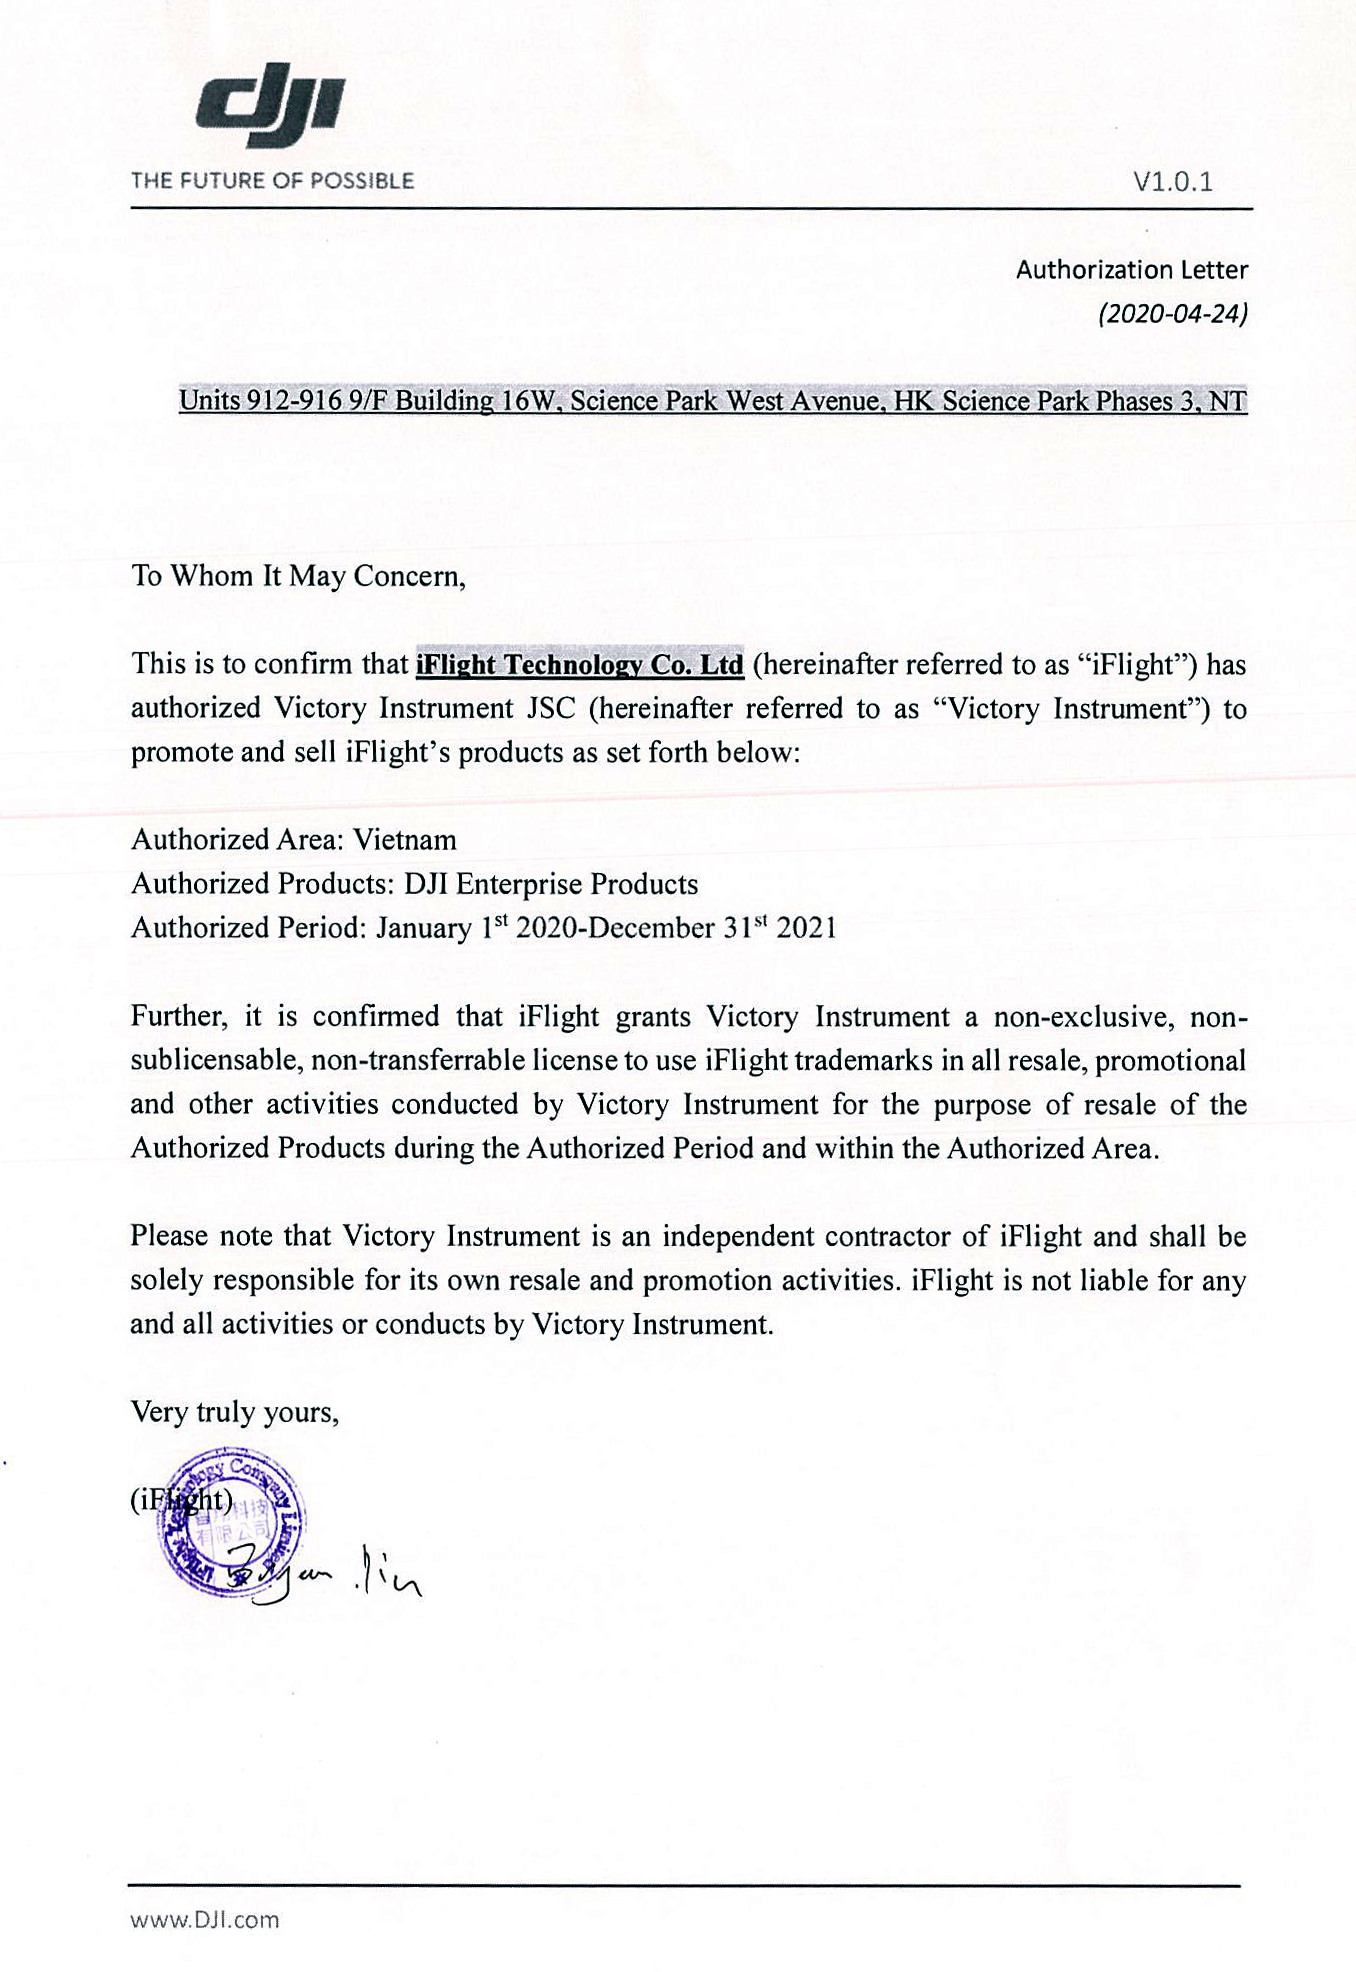 DJI Authorization letter to Victory - DJI Matrice 30 - Chính Hãng Thắng Lợi Victory Phân Phối